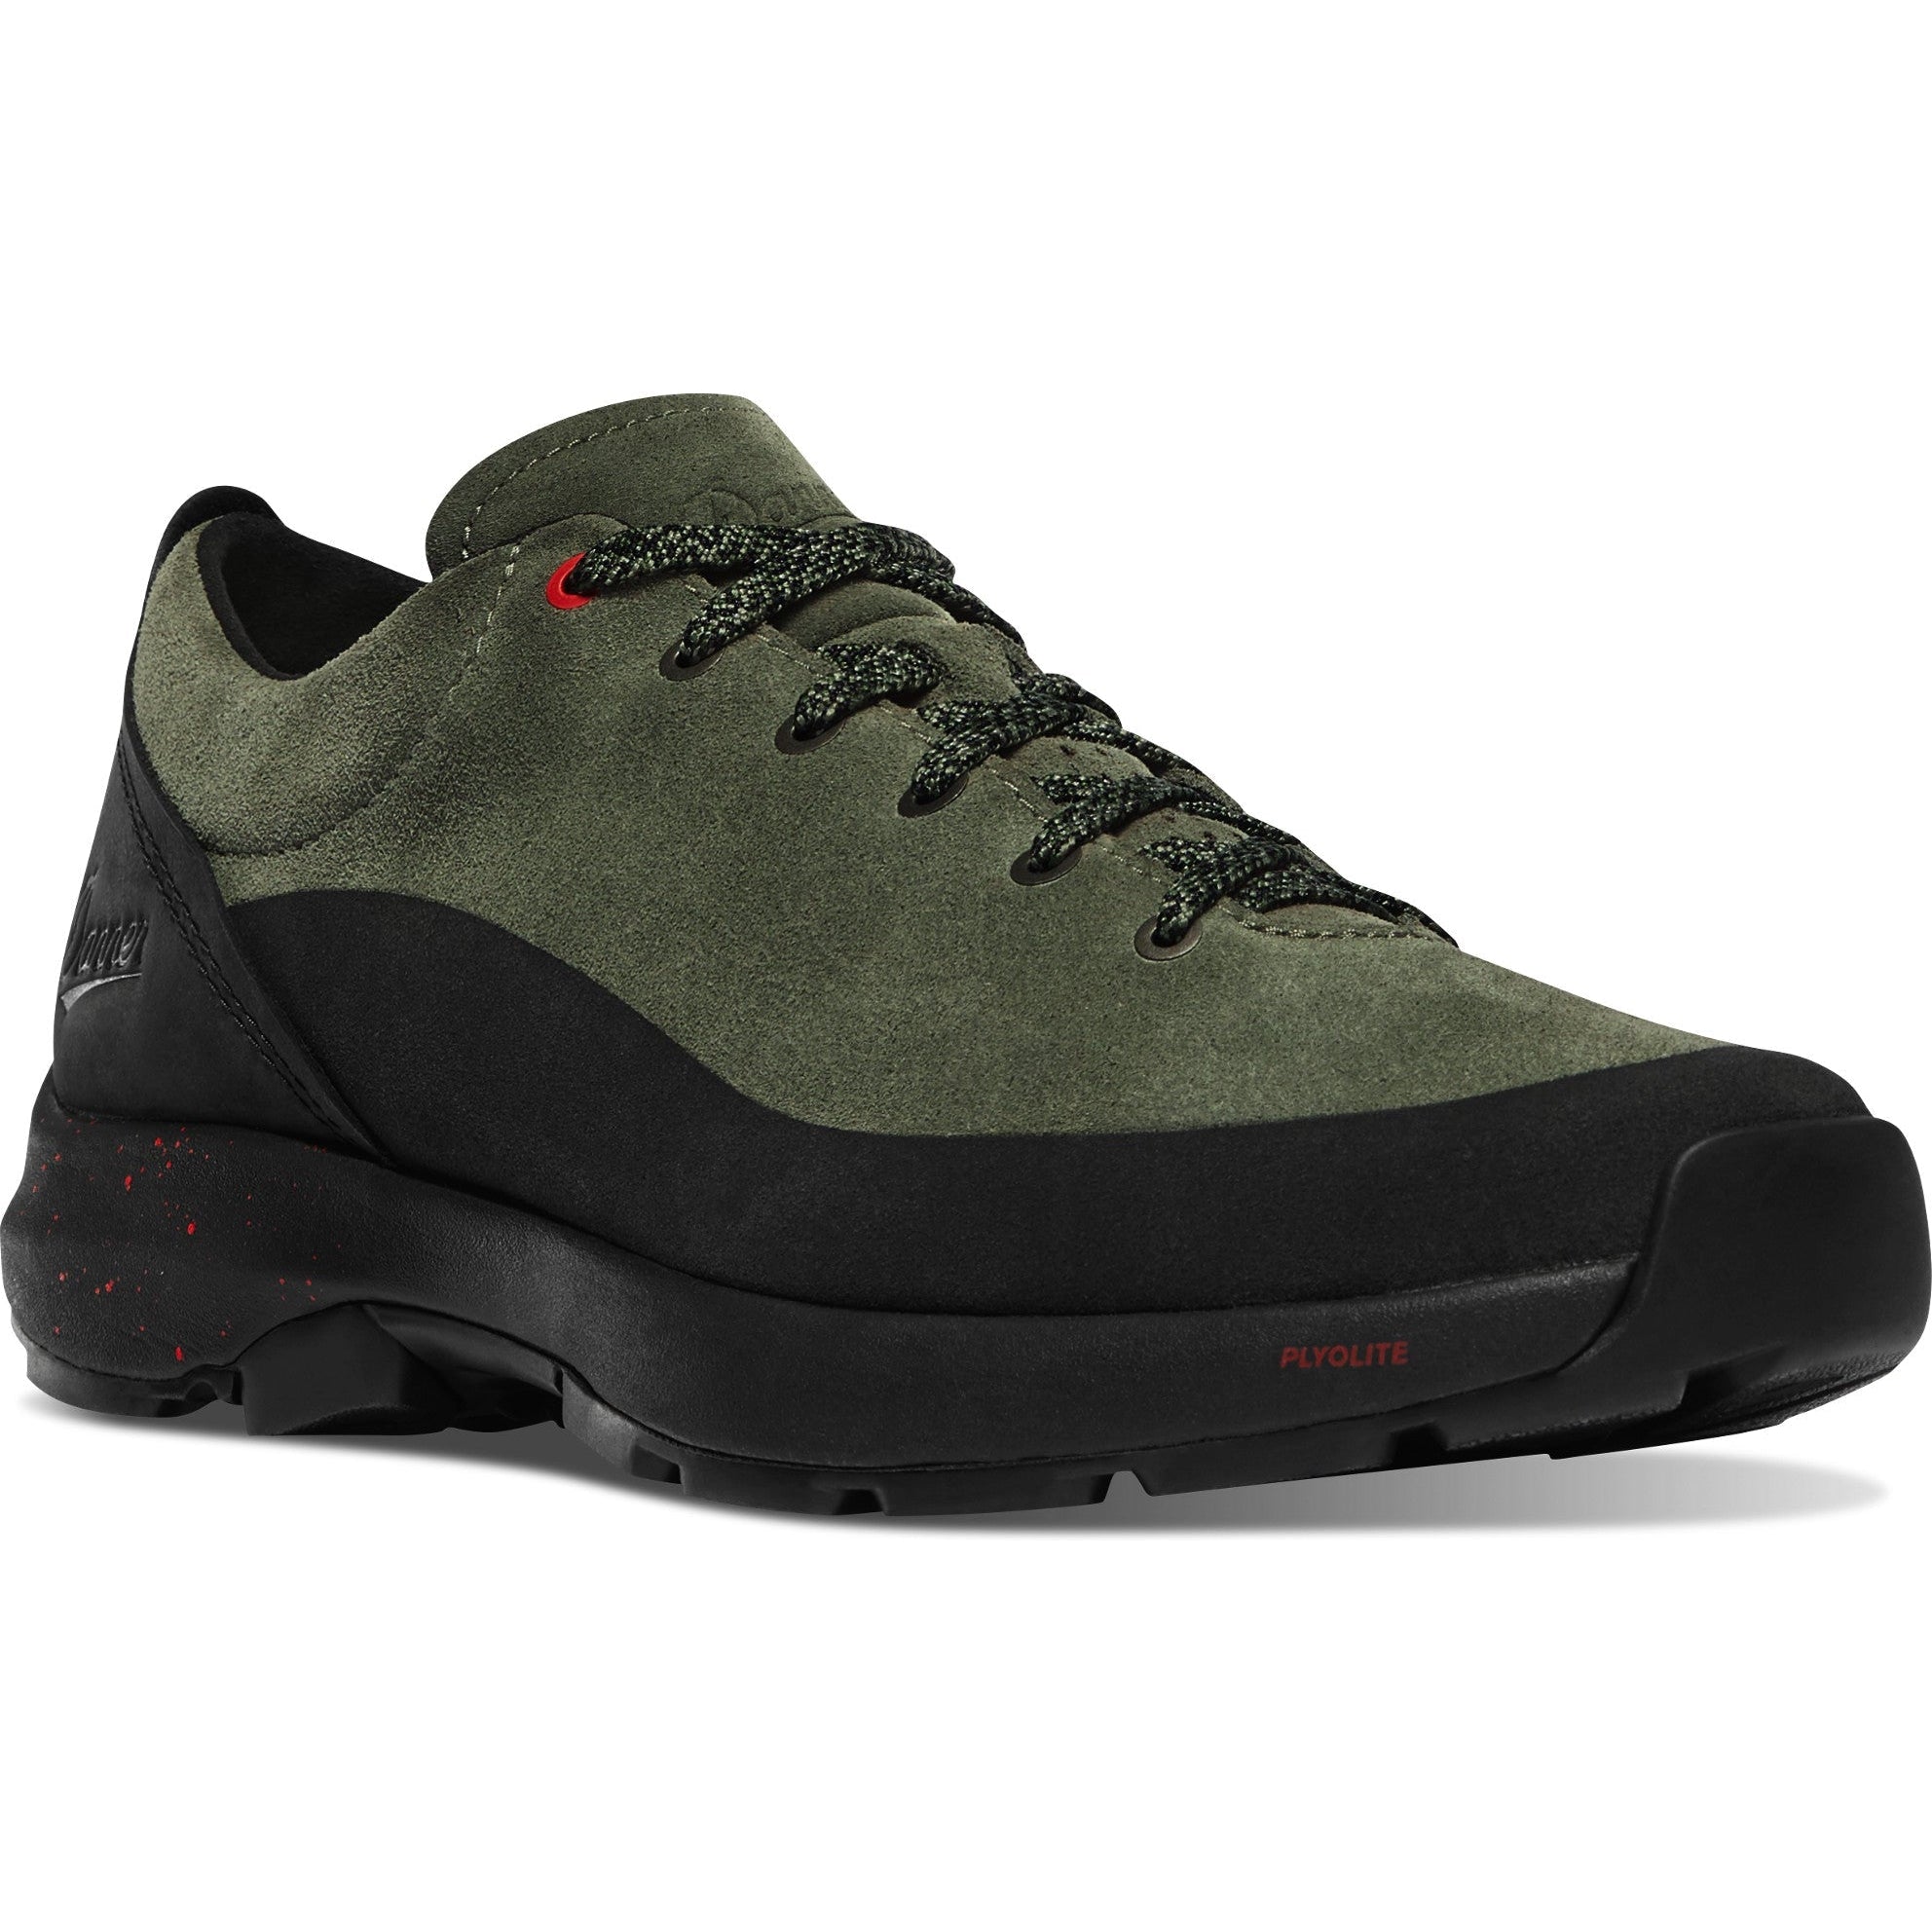 Danner Men's Caprine Low Suede 3" Lifestyle Shoe - Deep Lichen - 31329 7 / Medium / Green - Overlook Boots